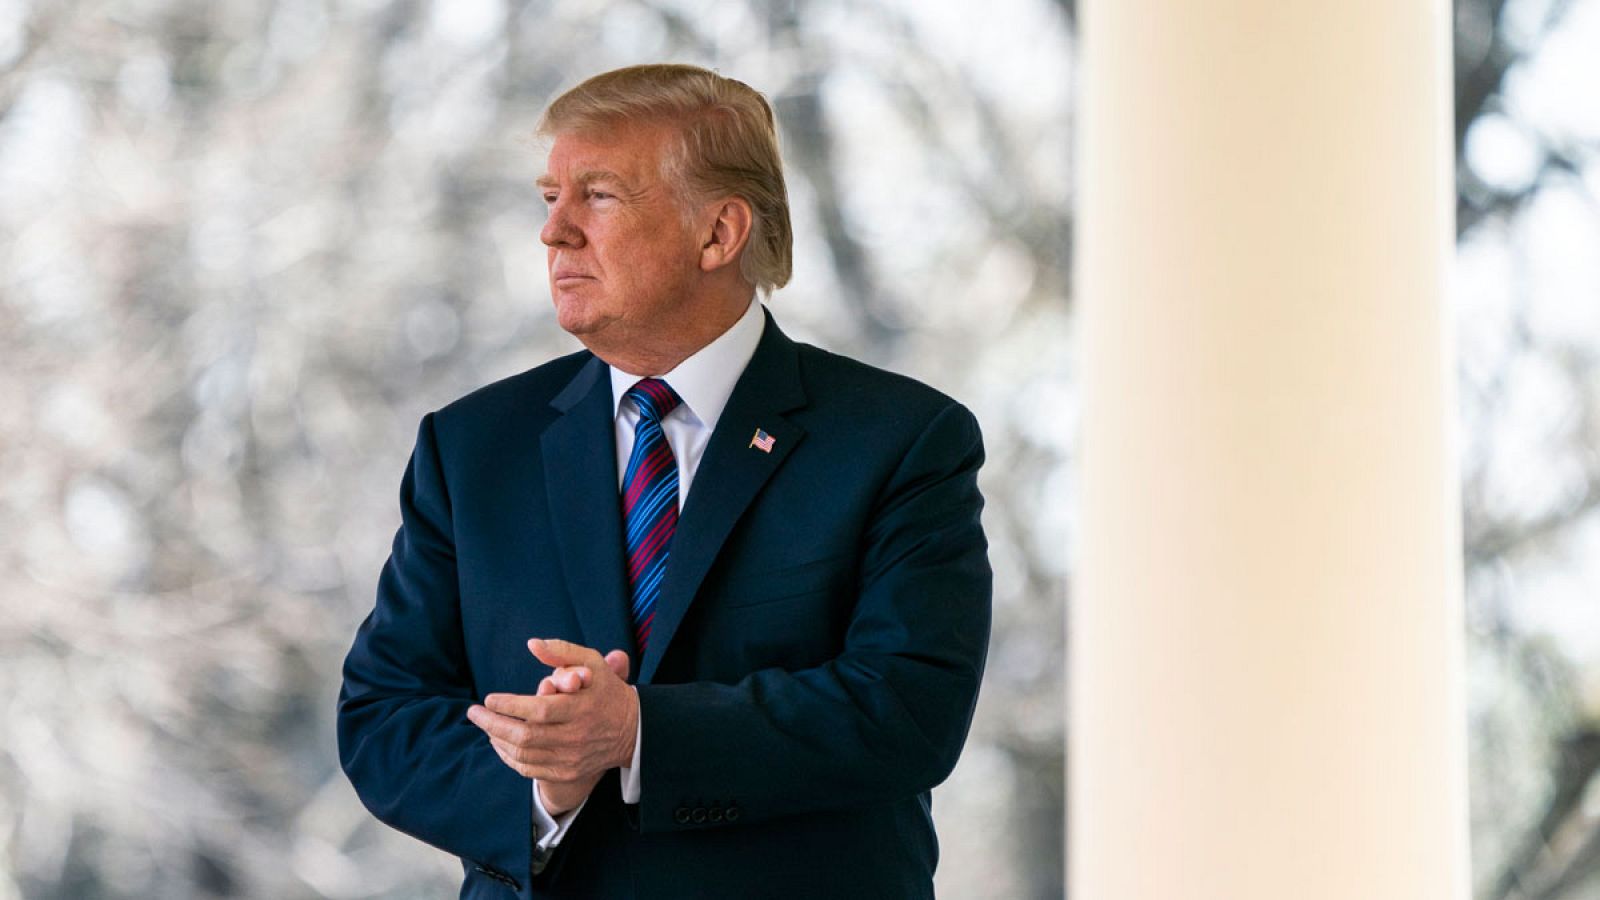 El presidente de Estados Unidos, Donald Trump, durante una rueda de prensa en los jardines de la Casa Blanca el jueves, 12 de abril de 2018.